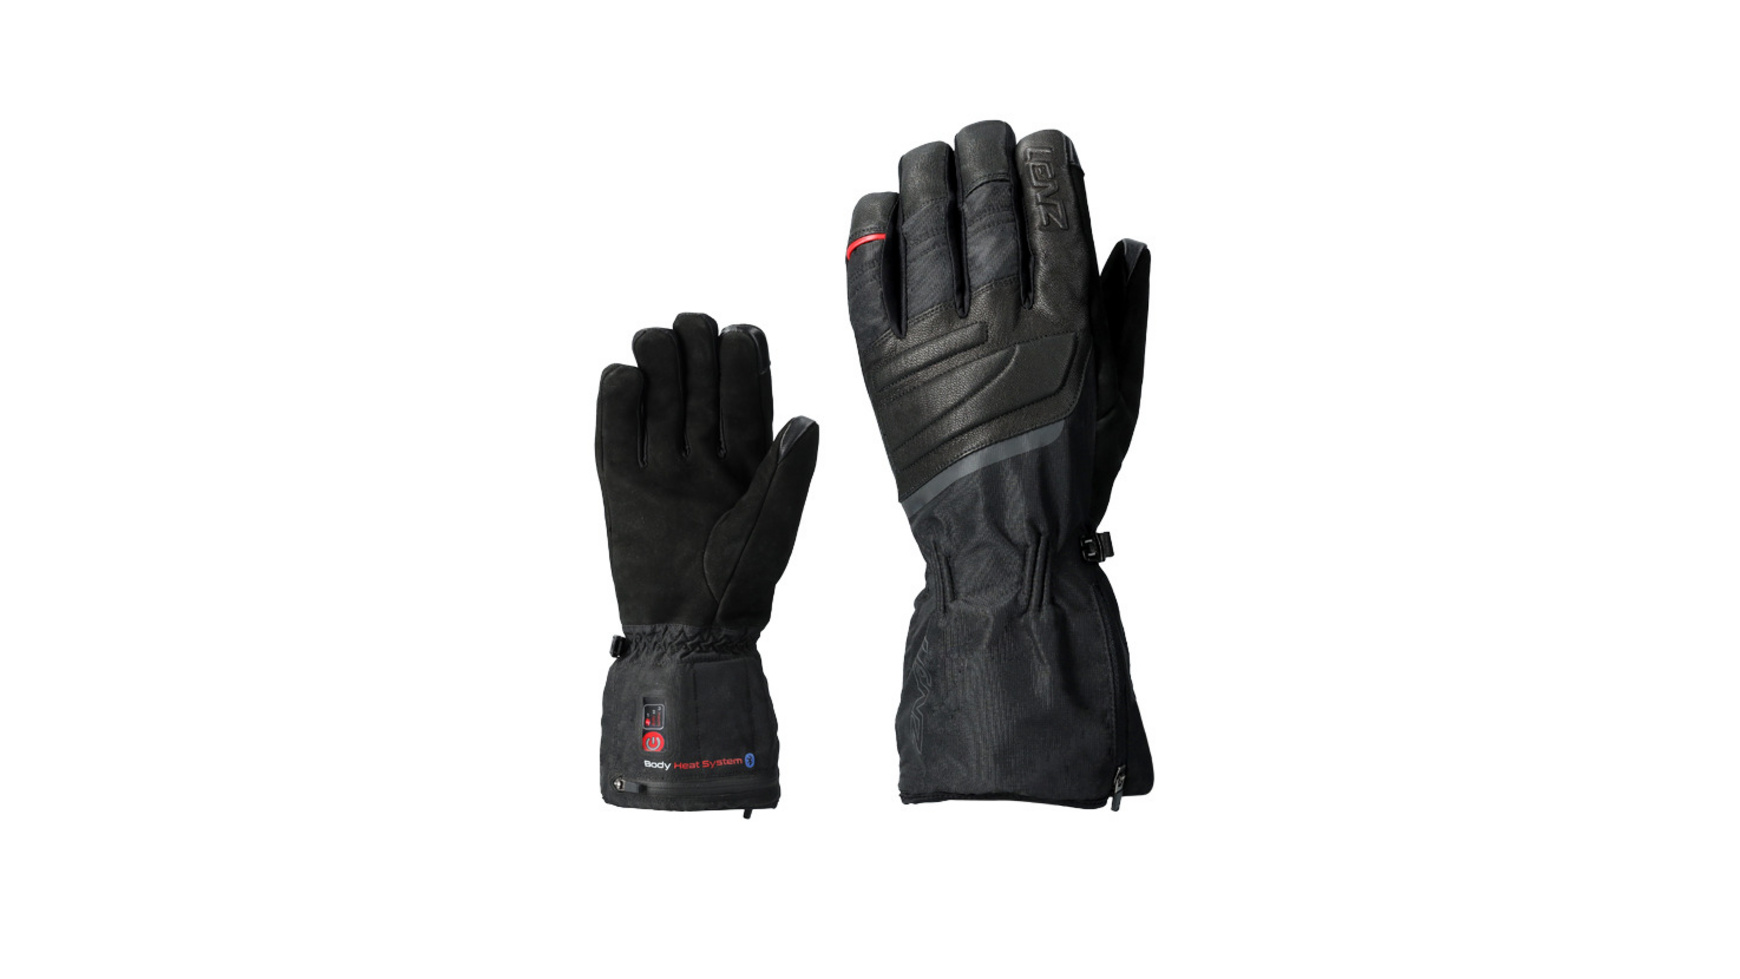 Lenz heat glove 6.0 finger cap urban line unisex Handschuhe